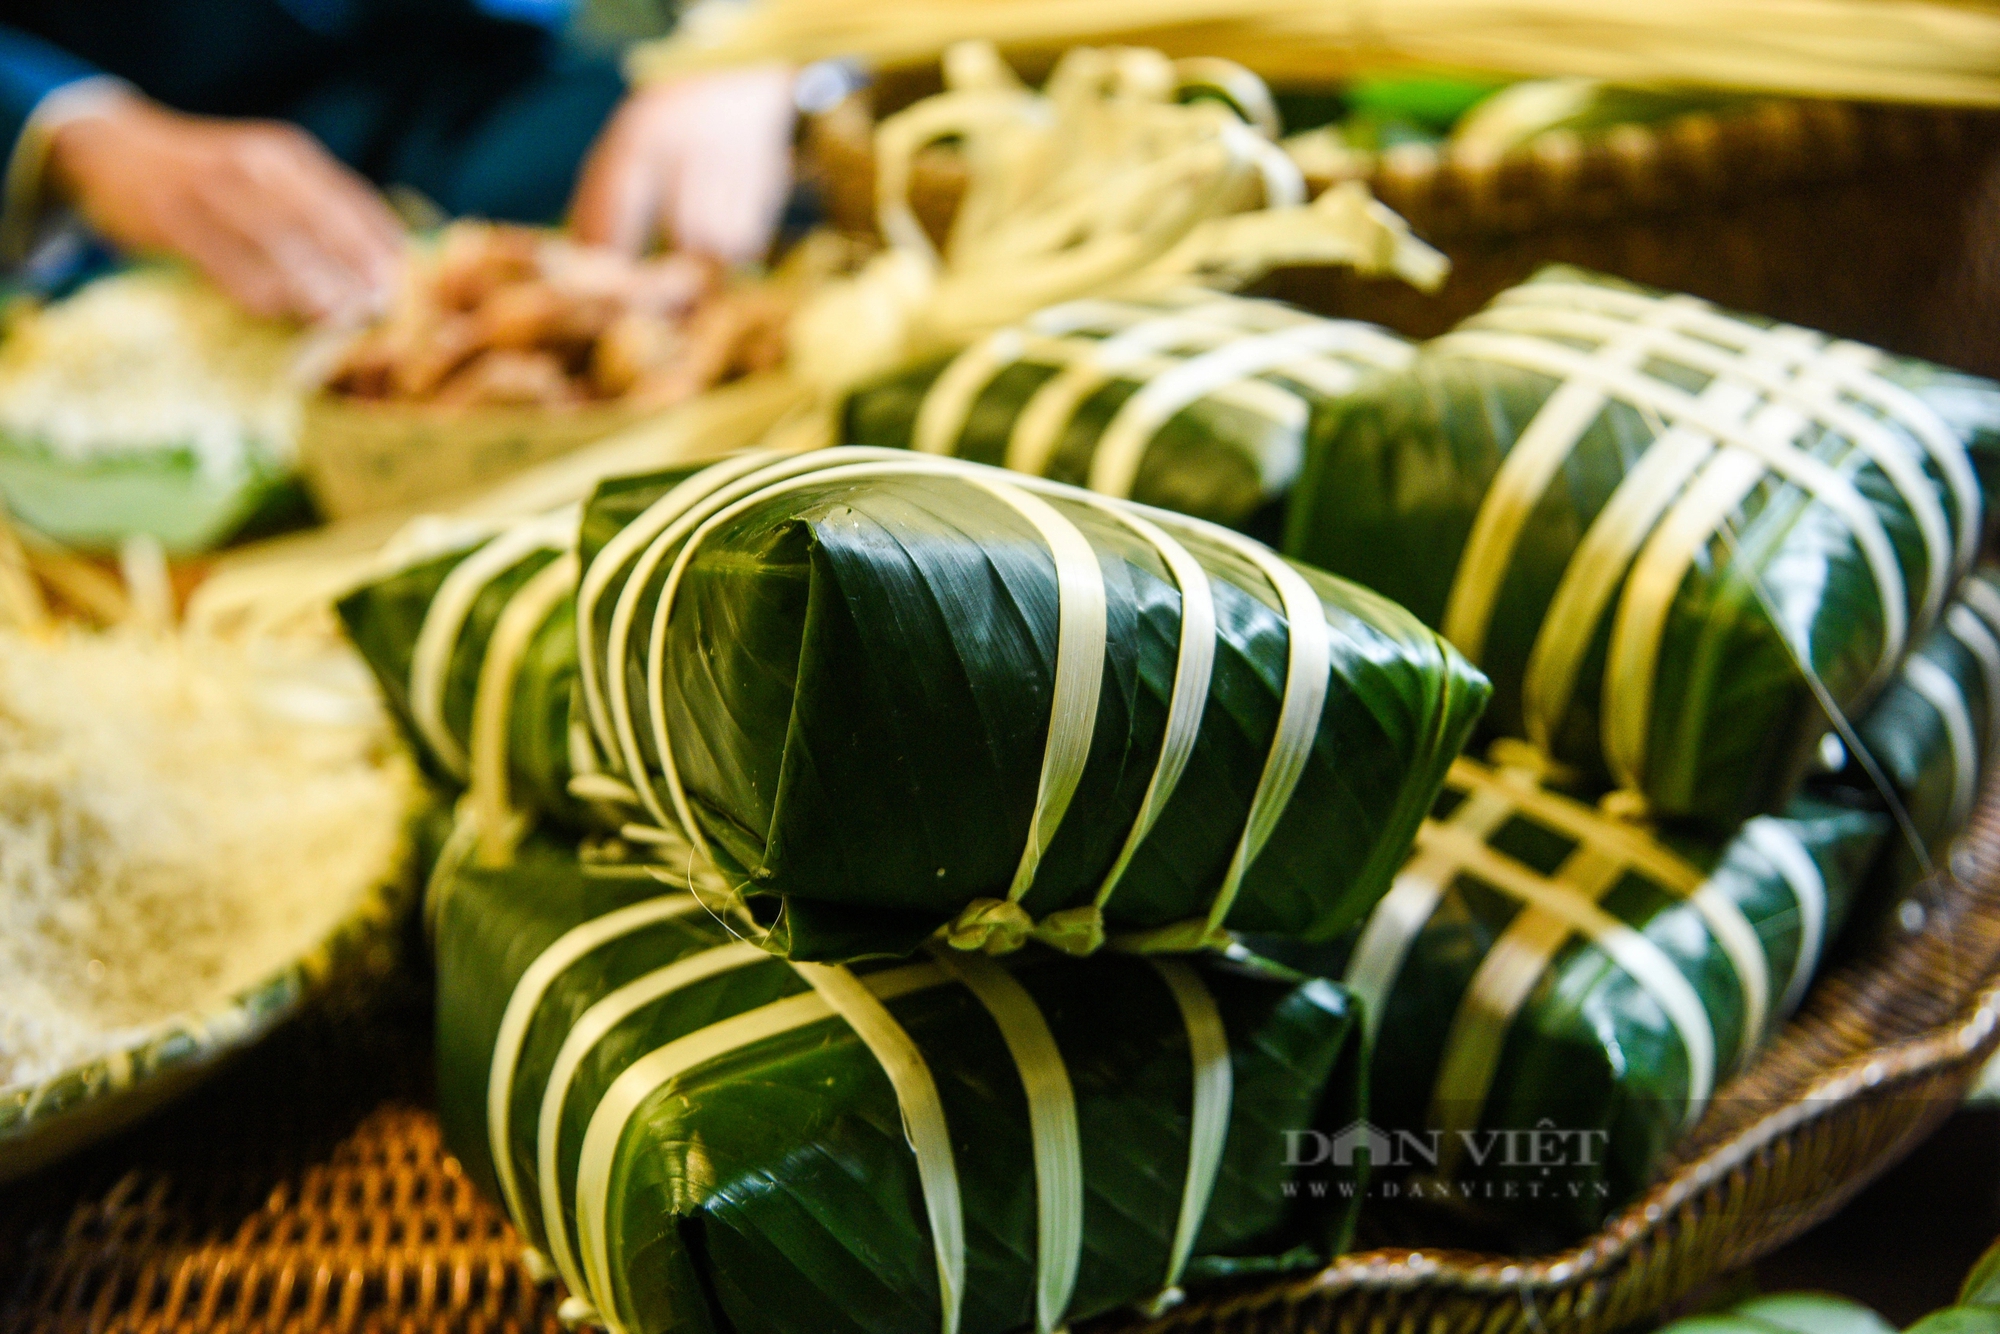 Khách quốc tế thích thú khi xem người Hà Nội gói bánh chưng truyền thống dịp Tết Nguyên đán- Ảnh 7.